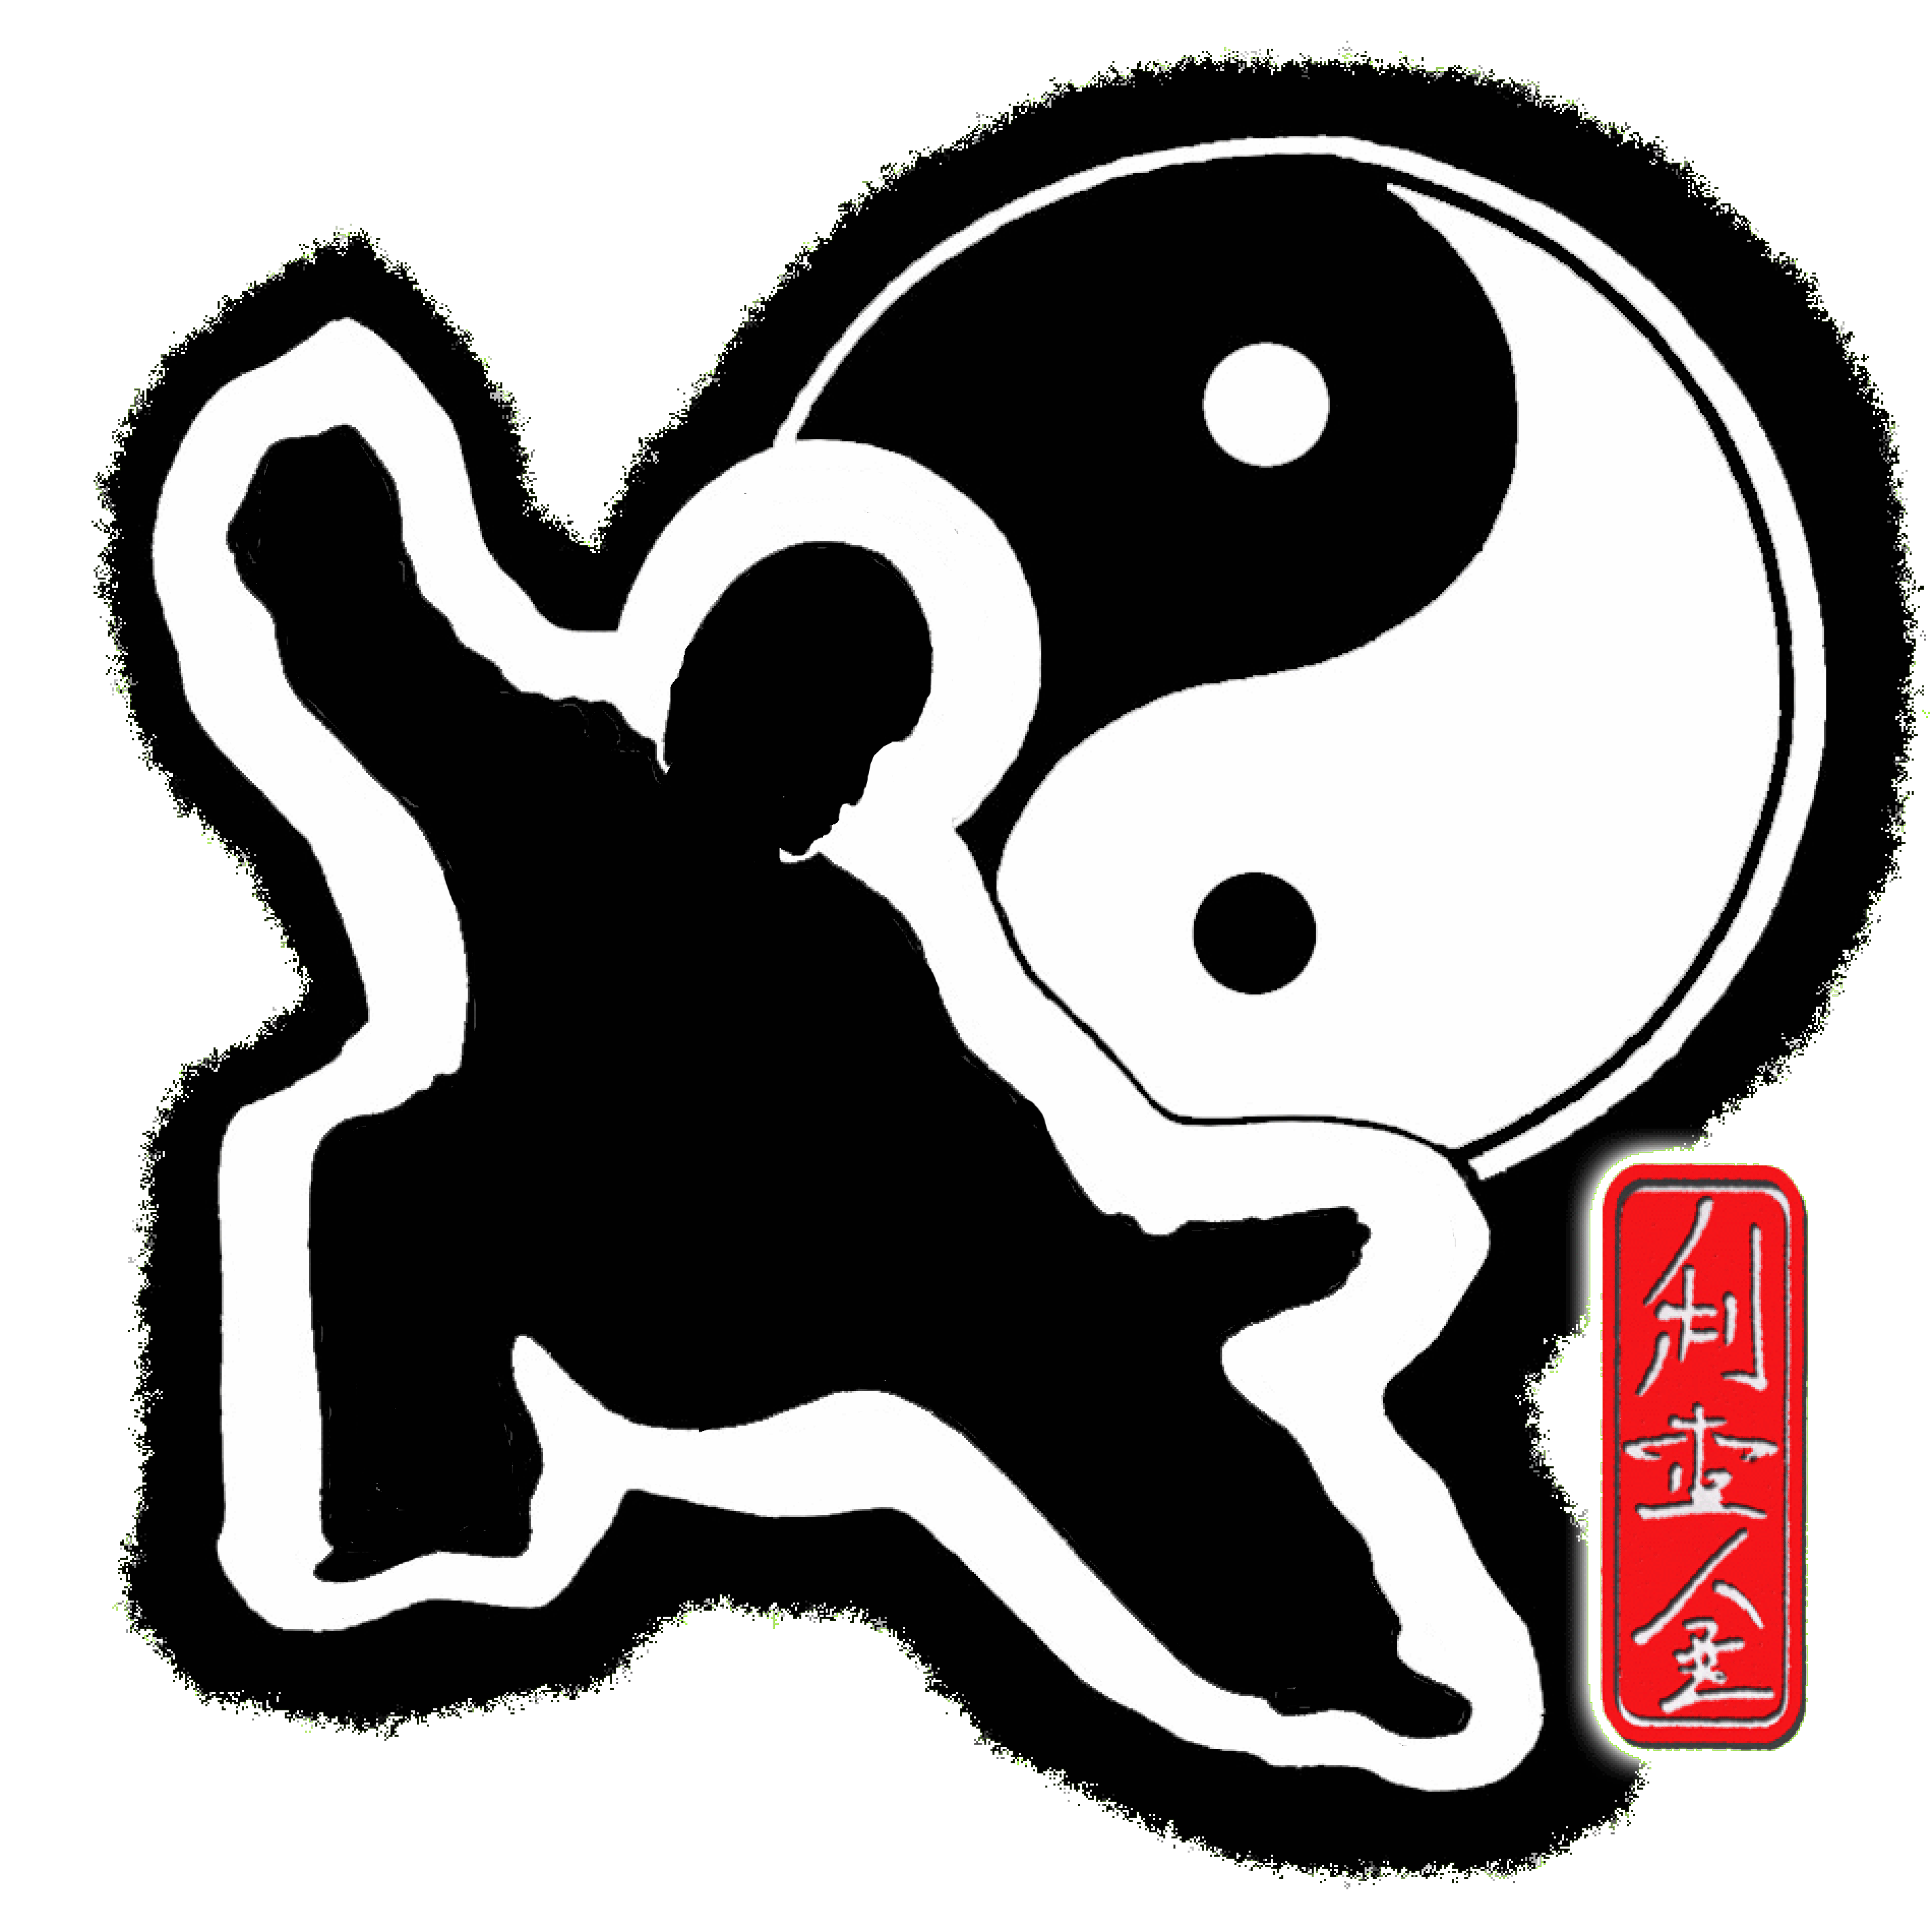 Mieir Kings tai chi and chi kung graphic logo